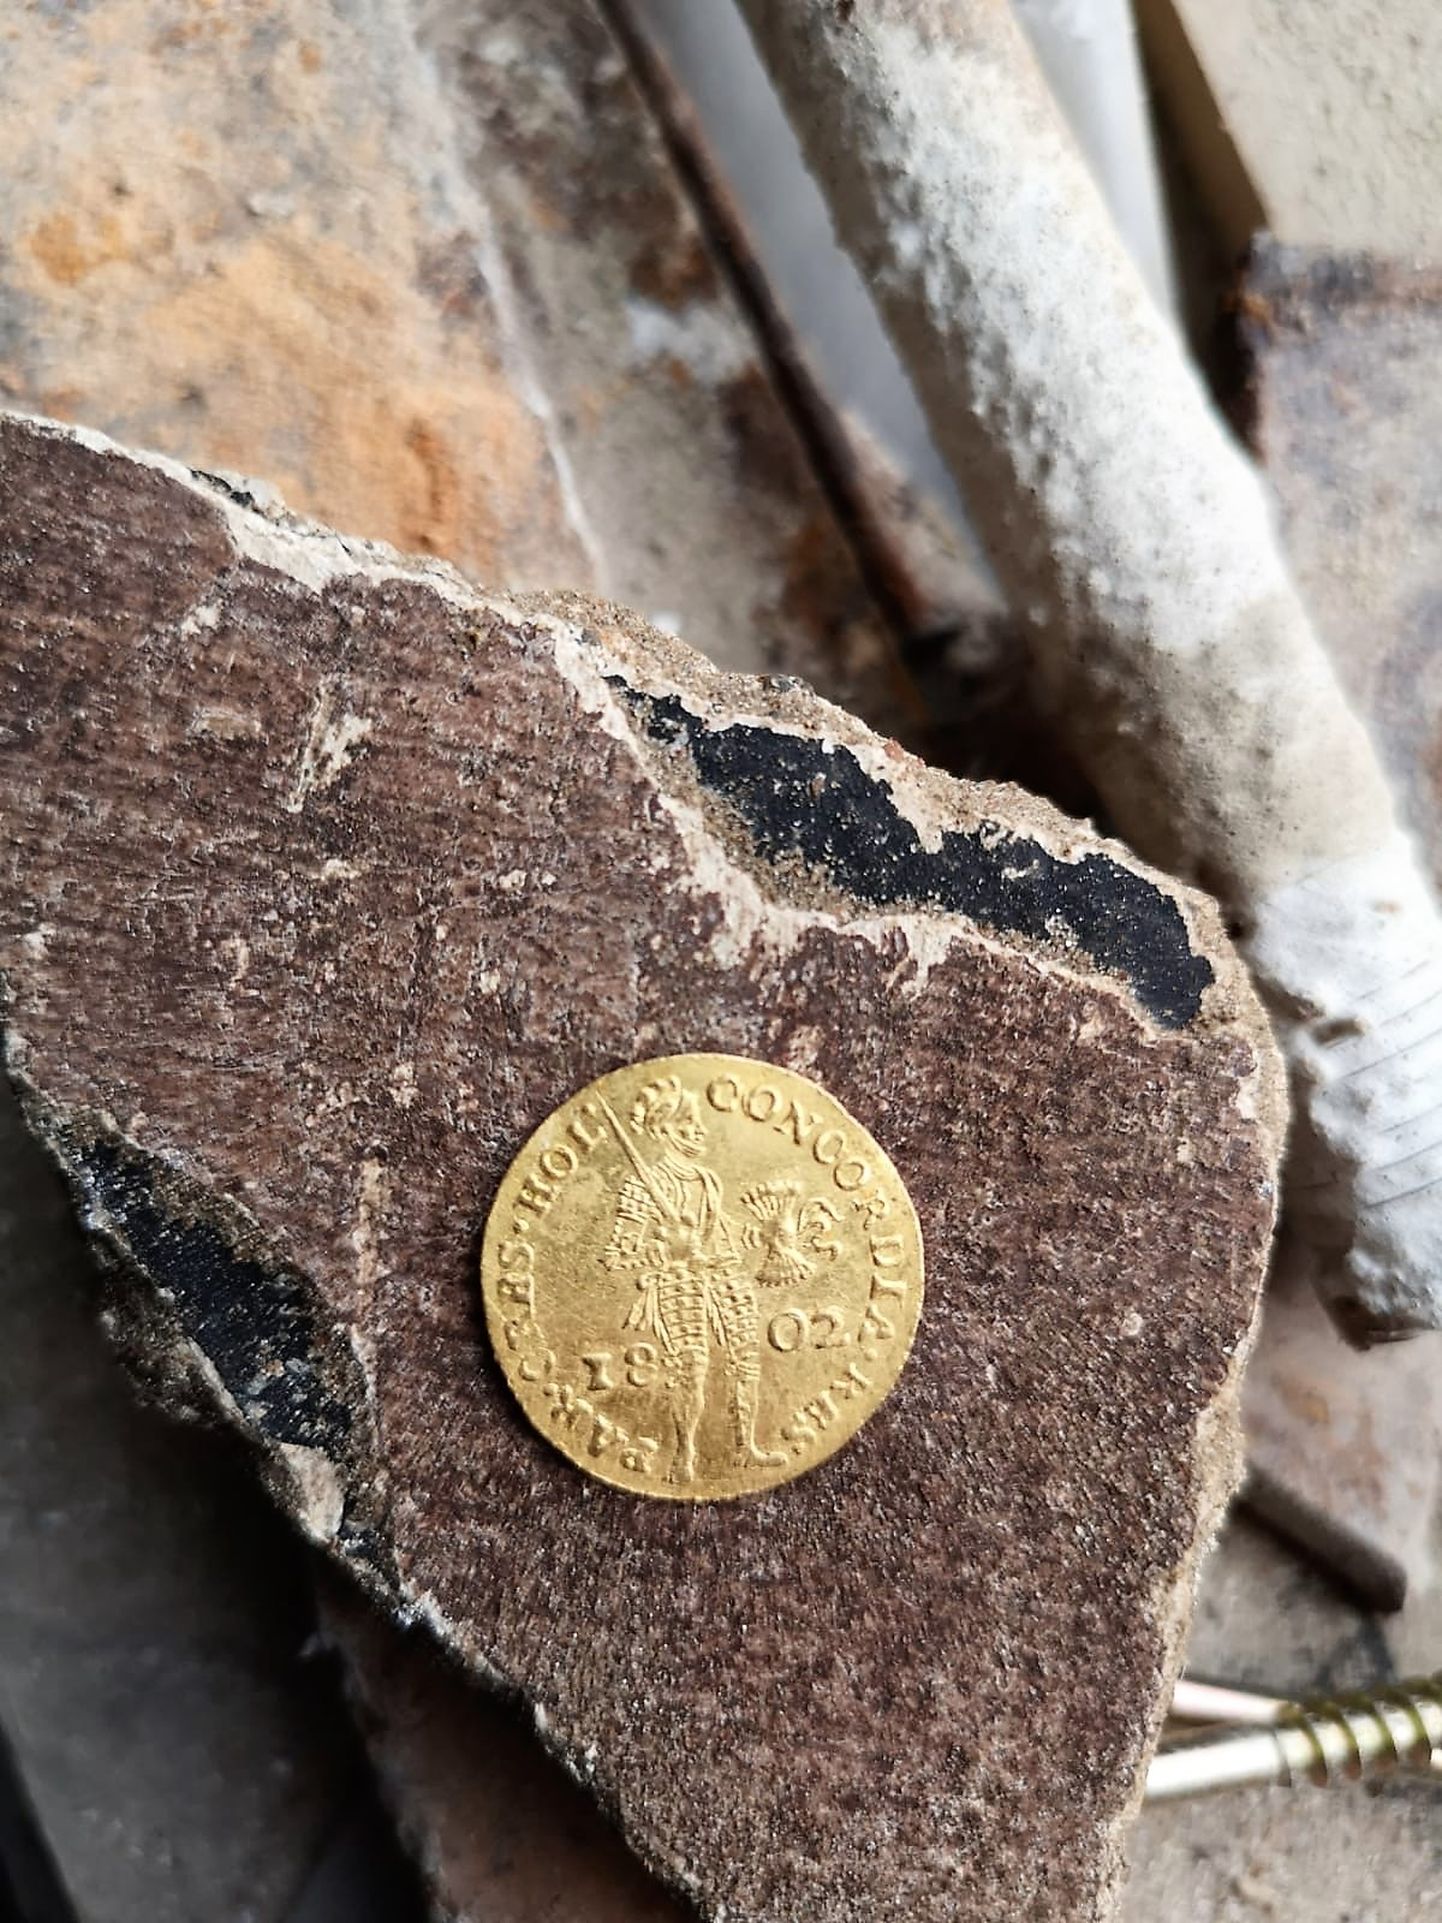 Zelta Holandes dukāts, kalts 1802. gadā, 3,45 grami, 983 zelta prove (averss un reverss)